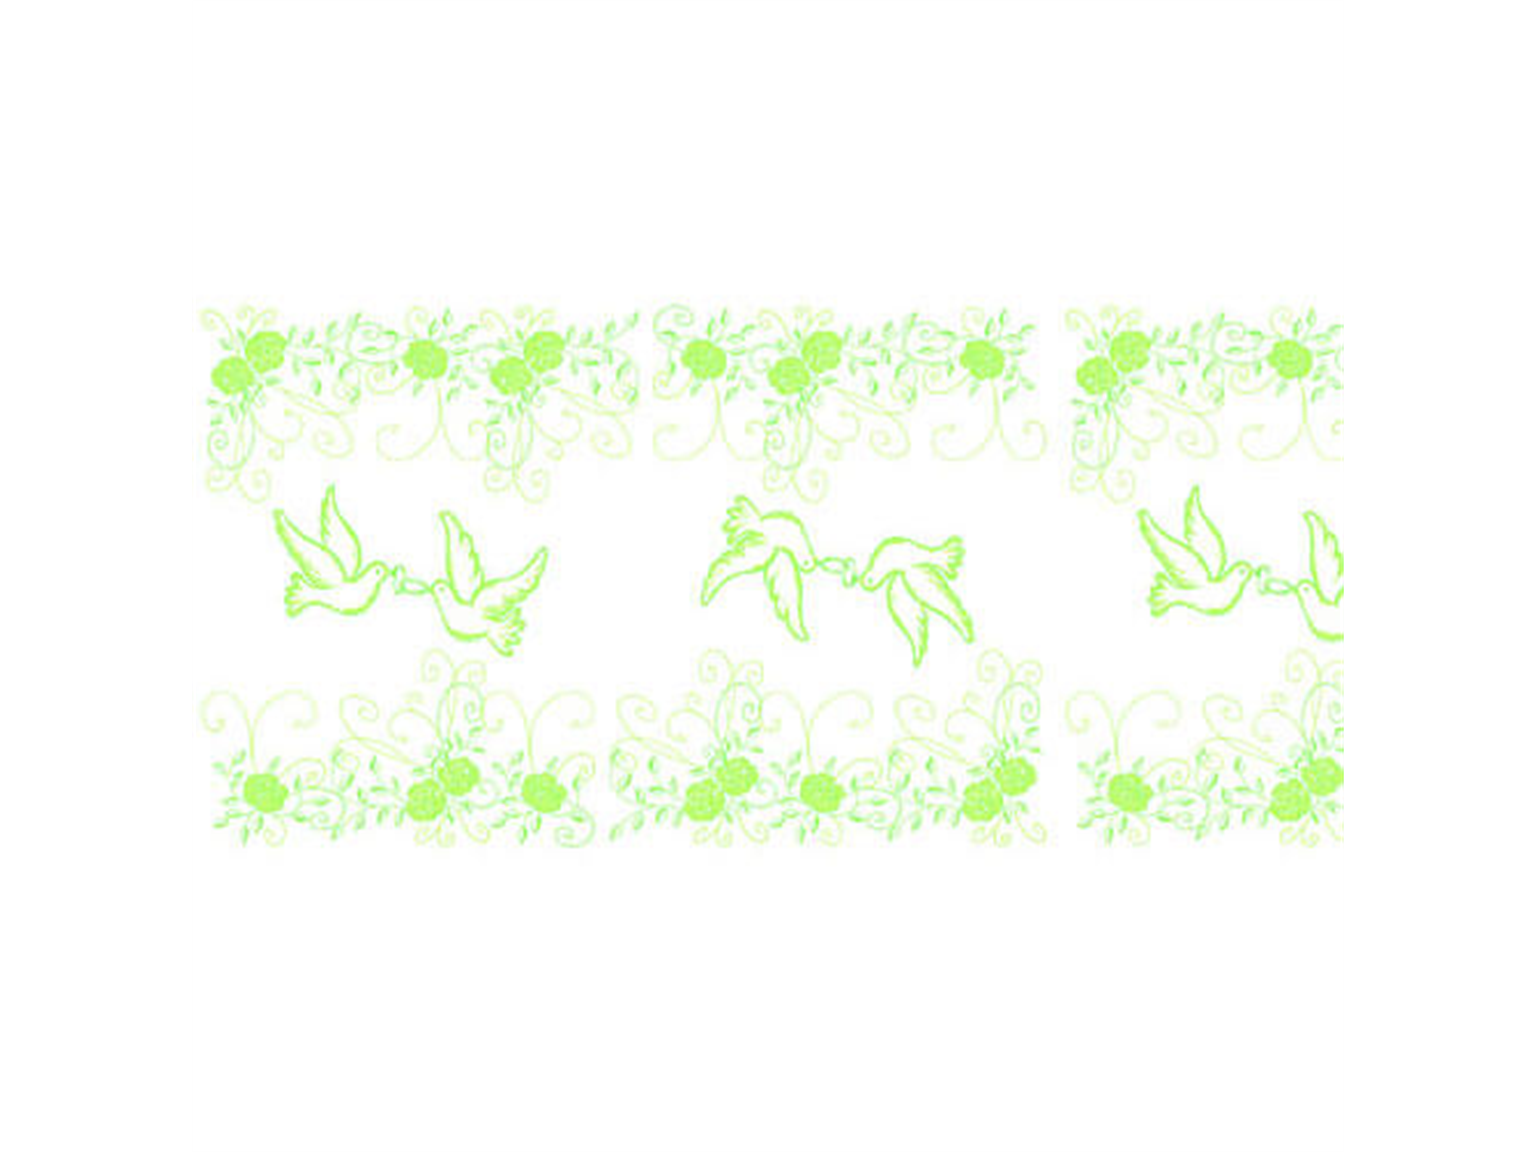 TISCHLAEUFER AIRLAID  40 cm breit x 24 lfm., Hochzeit (grün)